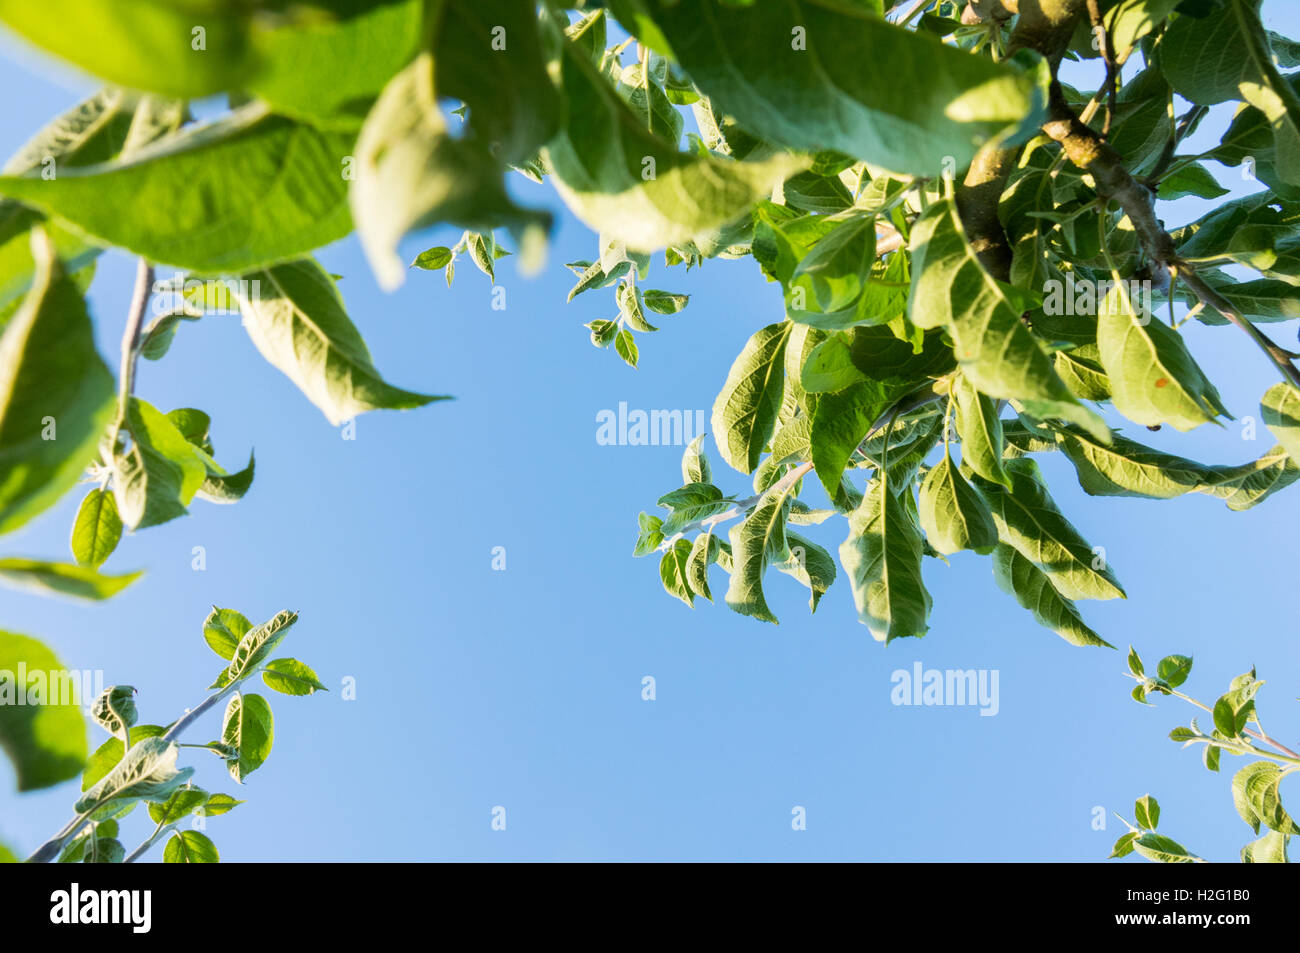 Frische grüne Blätter am Baum und blauer Himmel. Sommer-Natur-Szene zeigen Wachstum. Stockfoto